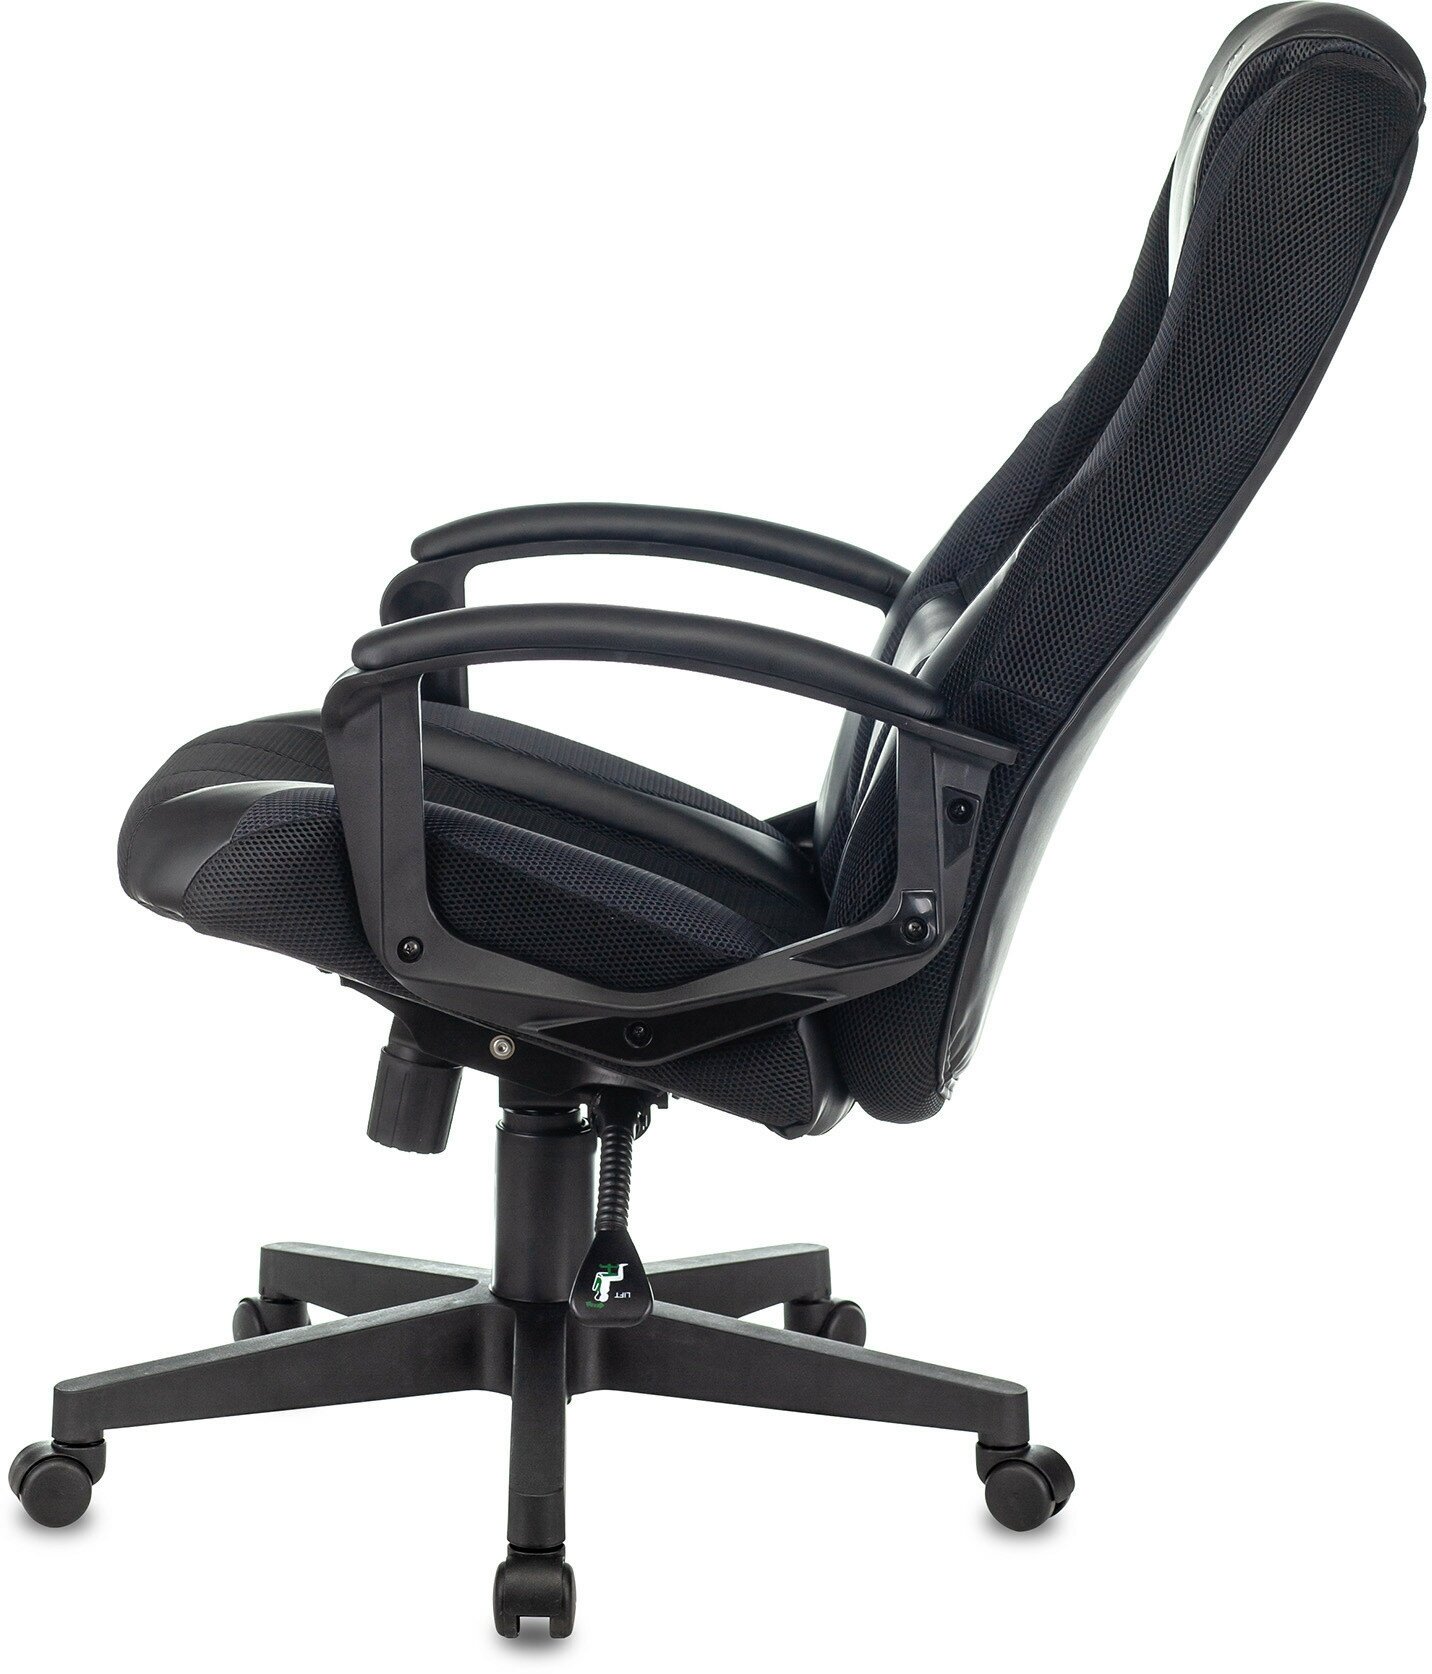 Кресло Zombie 9 текстиль/эко. кожа черный/серый